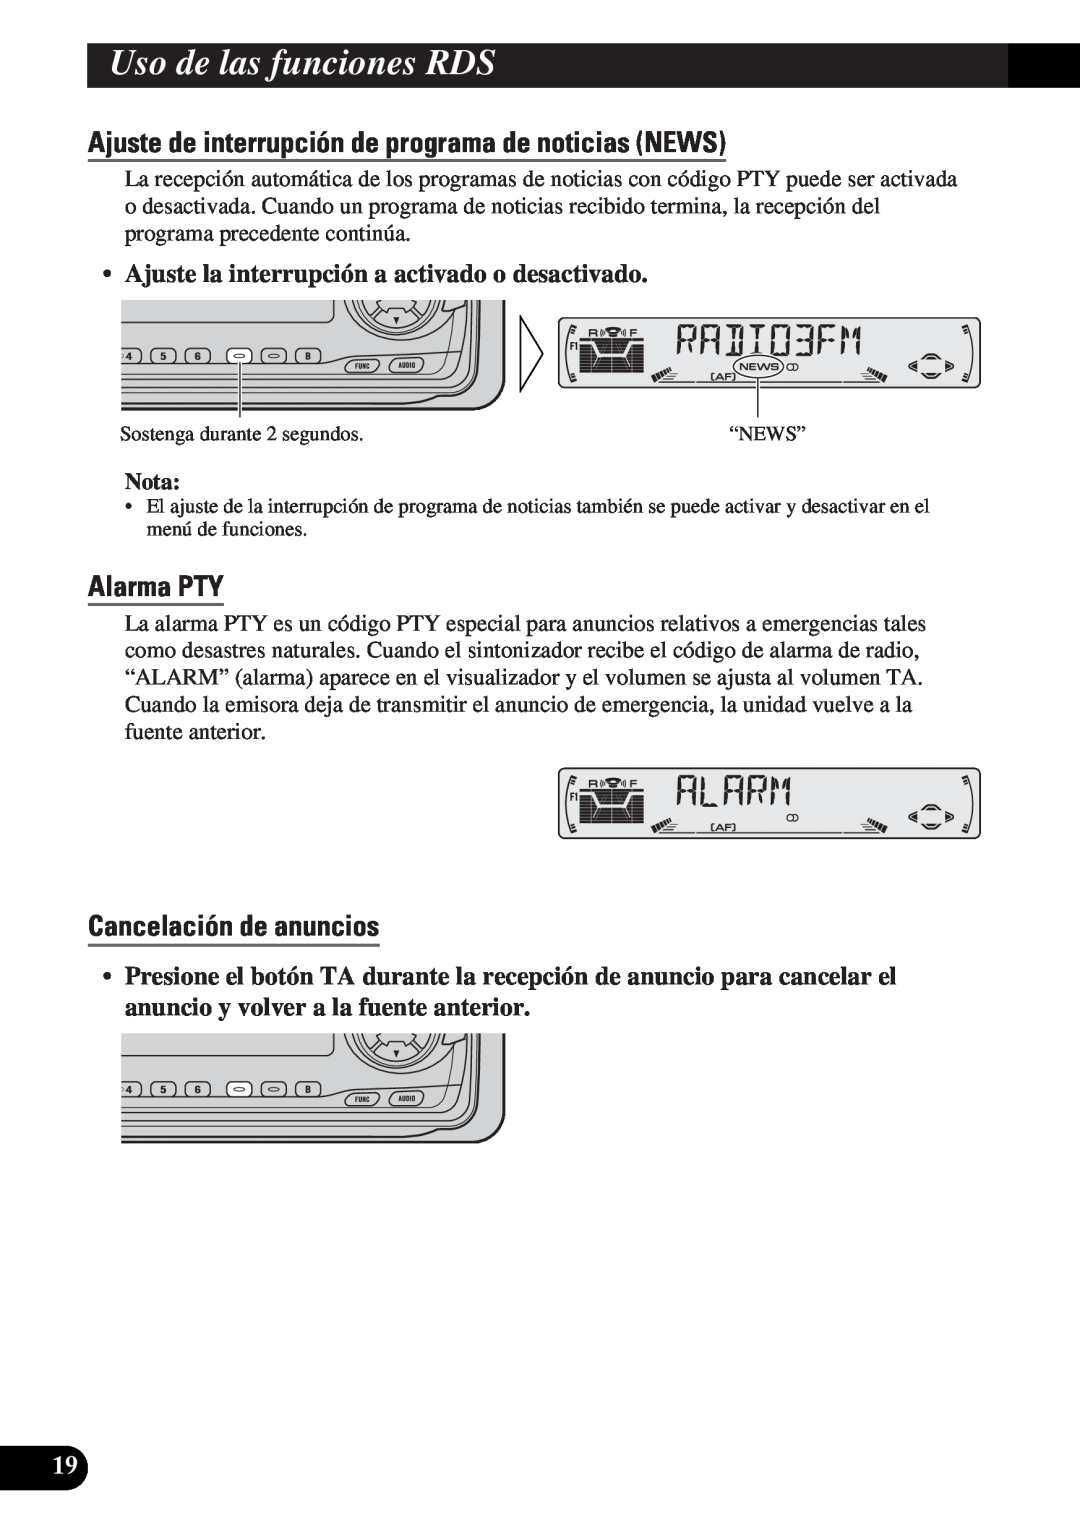 Pioneer DEH-3330R, DEH-3300R Alarma PTY, Cancelación de anuncios, UsoA Titled Englishlas funciones RDS, Nota 